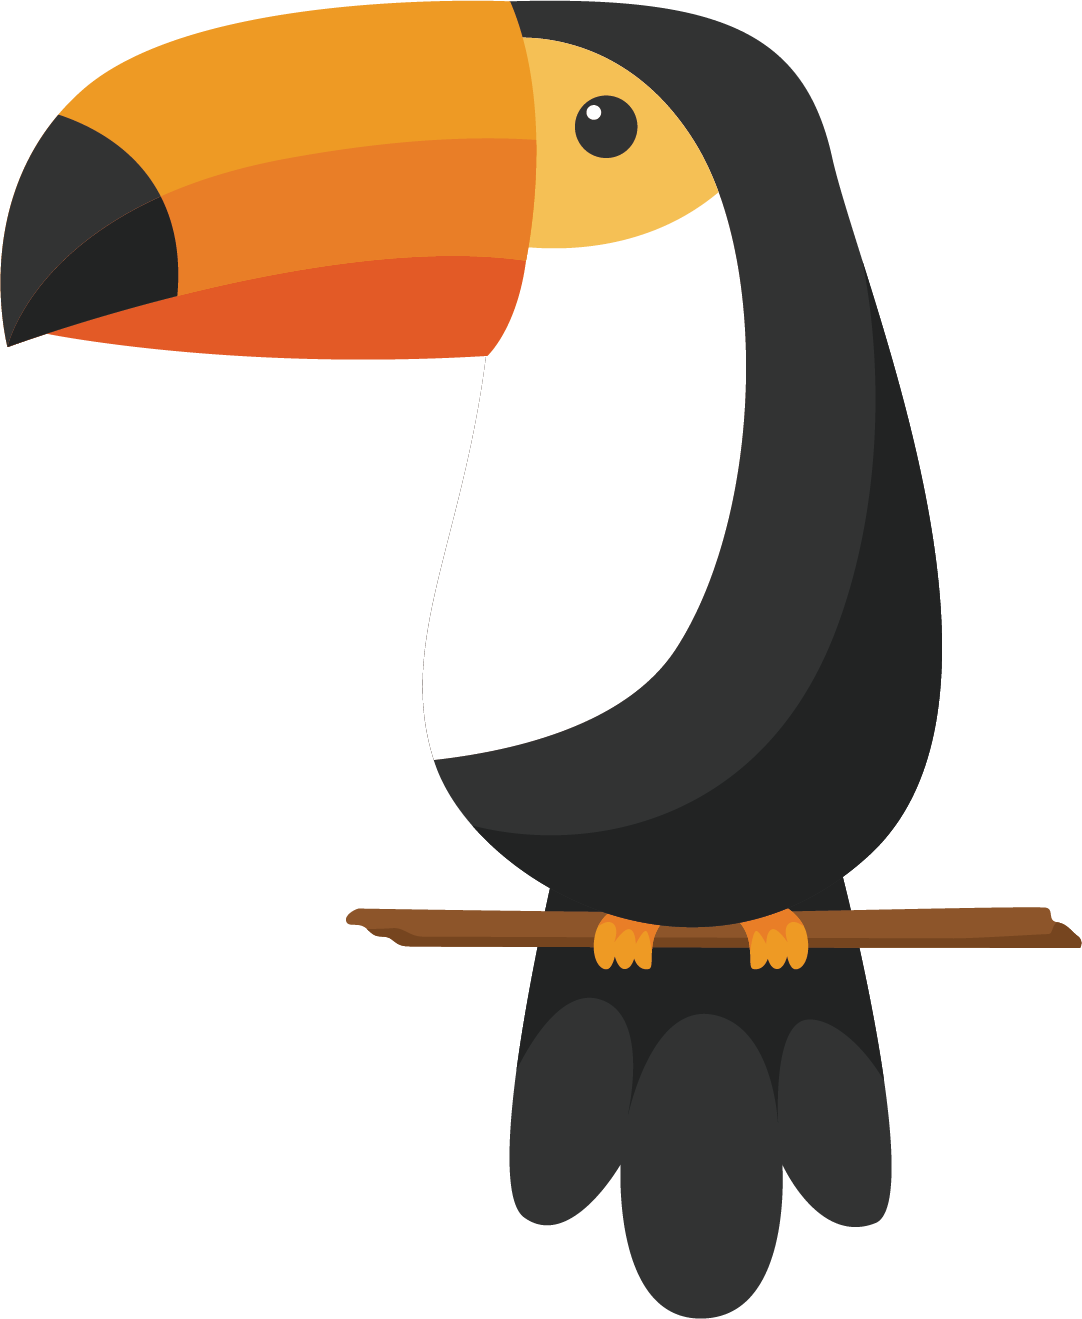 Bird Toco Toucan Drawing Keel-billed Toucan - Toucan Play At That Game Shirt - Funny Bird Pun Animal (1082x1319)